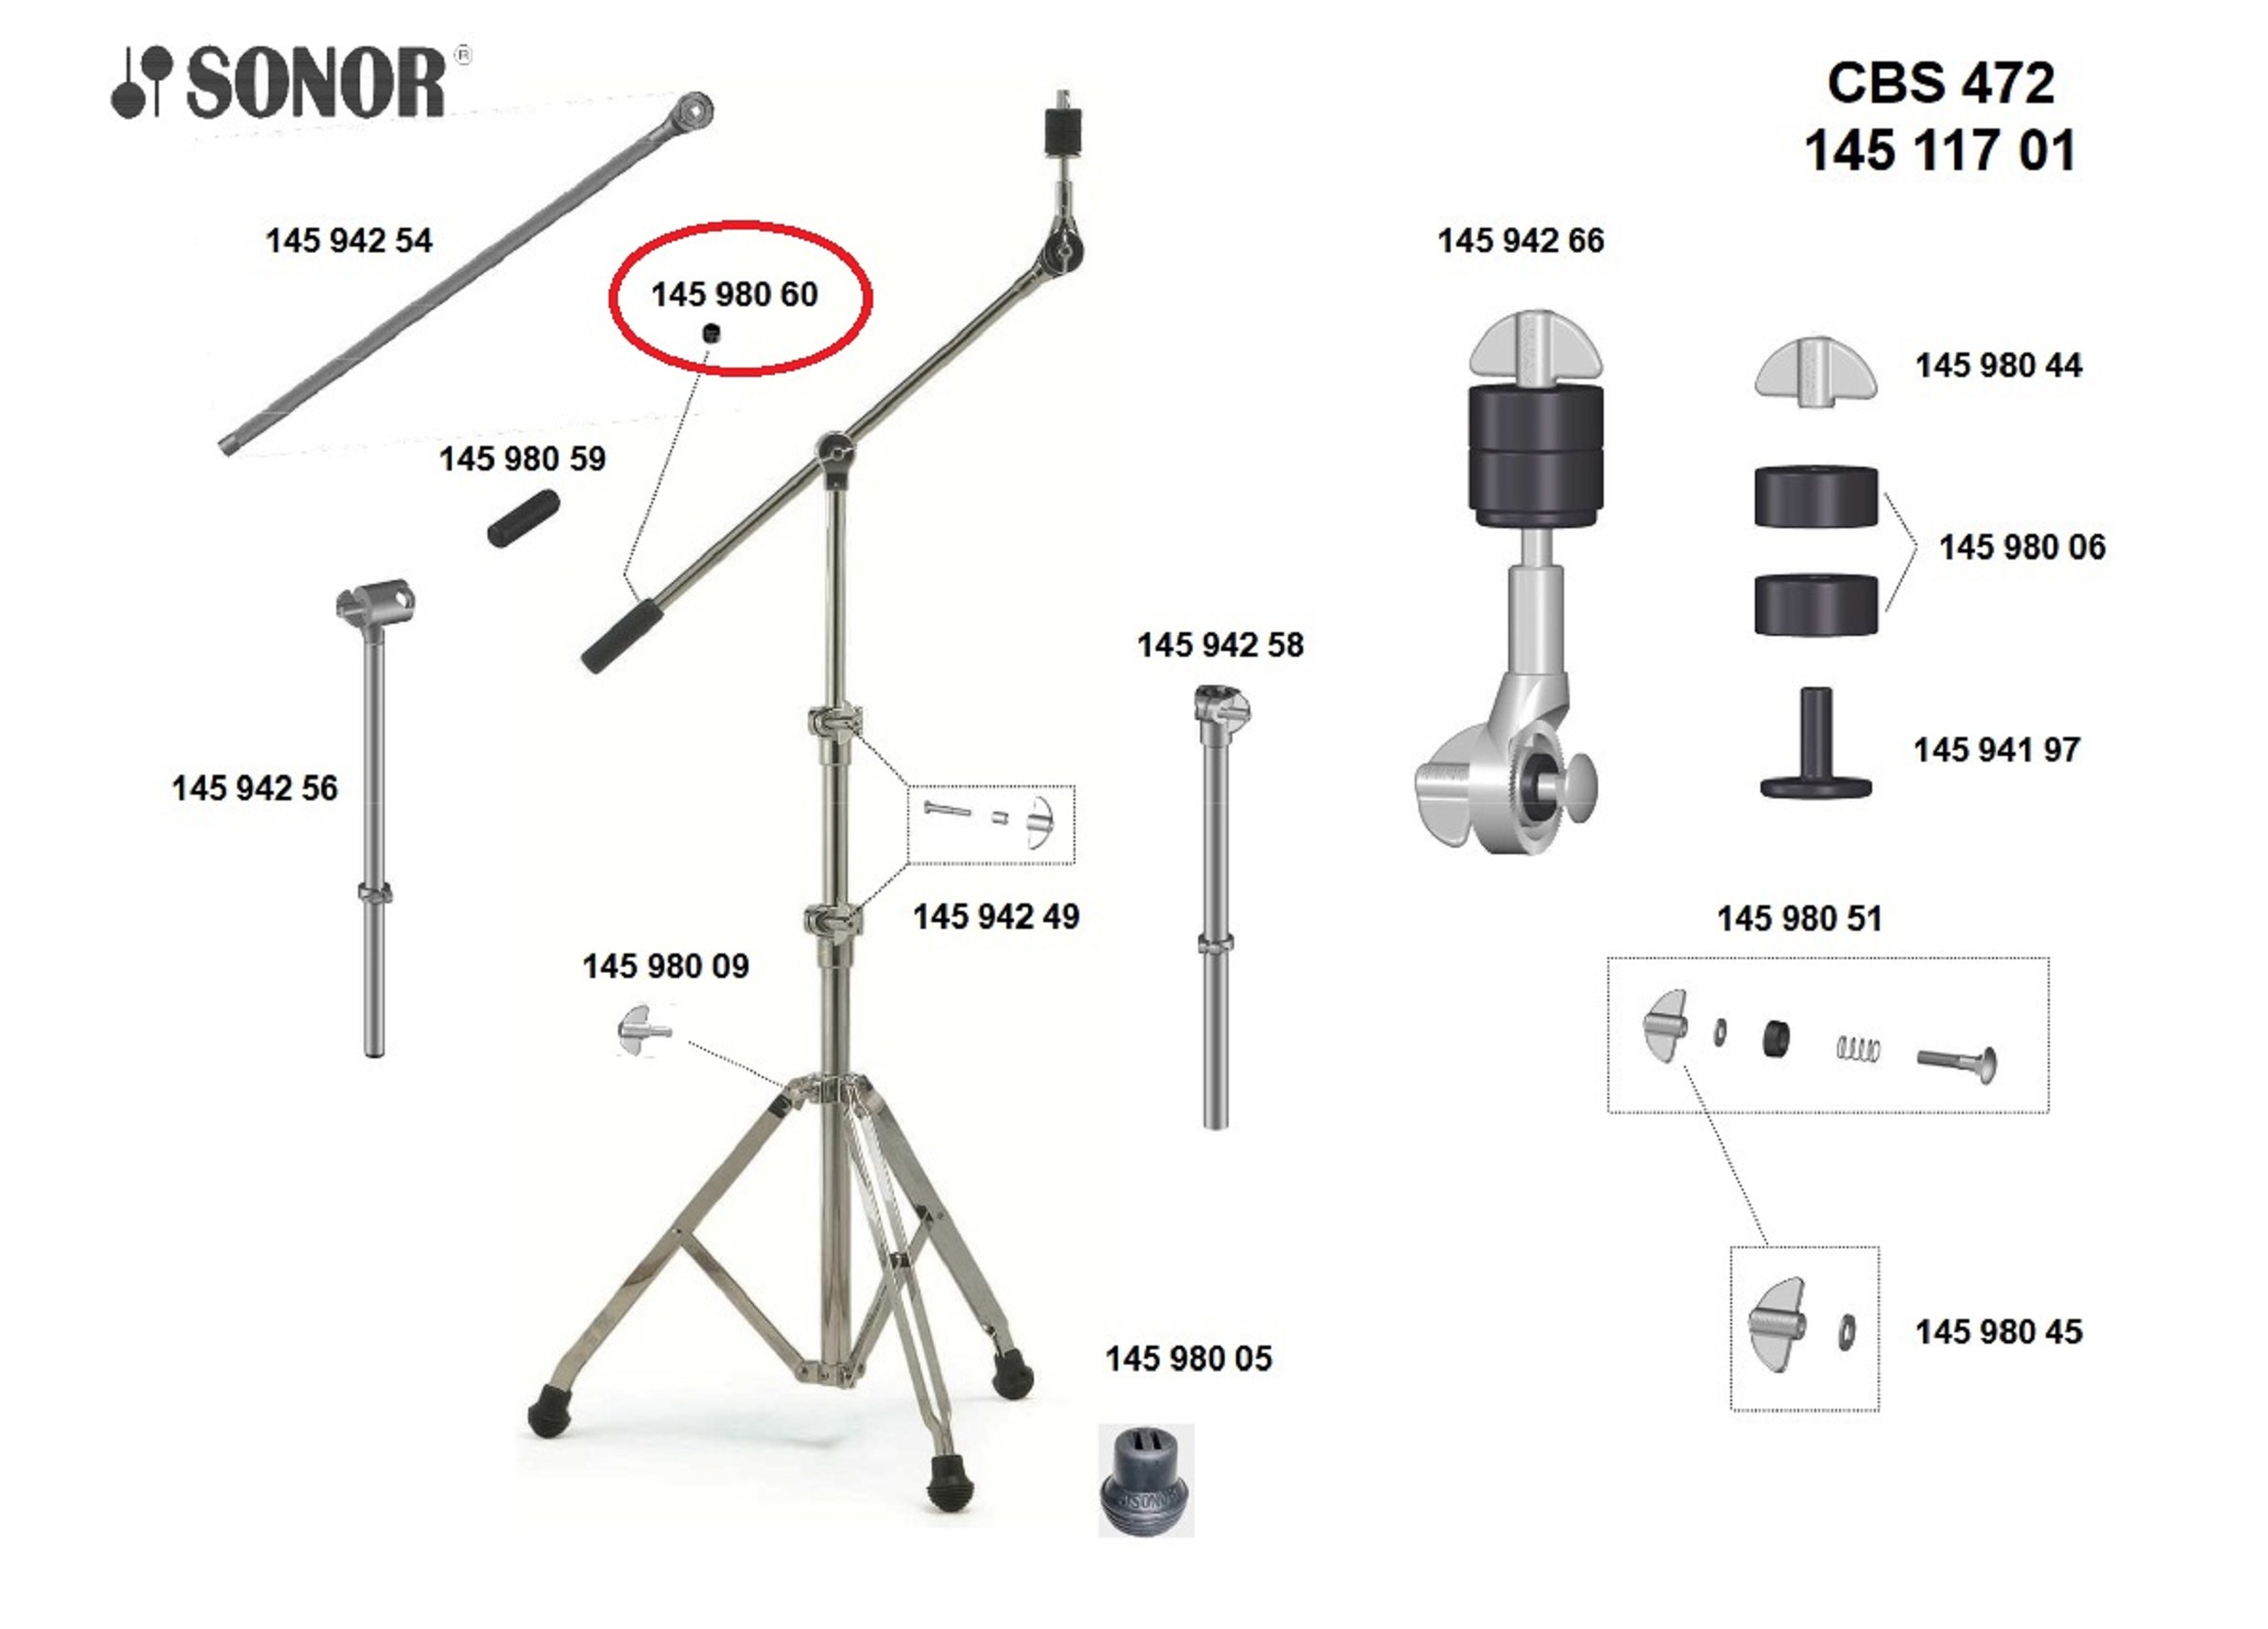 Sonor Parts Feststellschraube für Gegengewicht für CBS472/MBS442 VE3